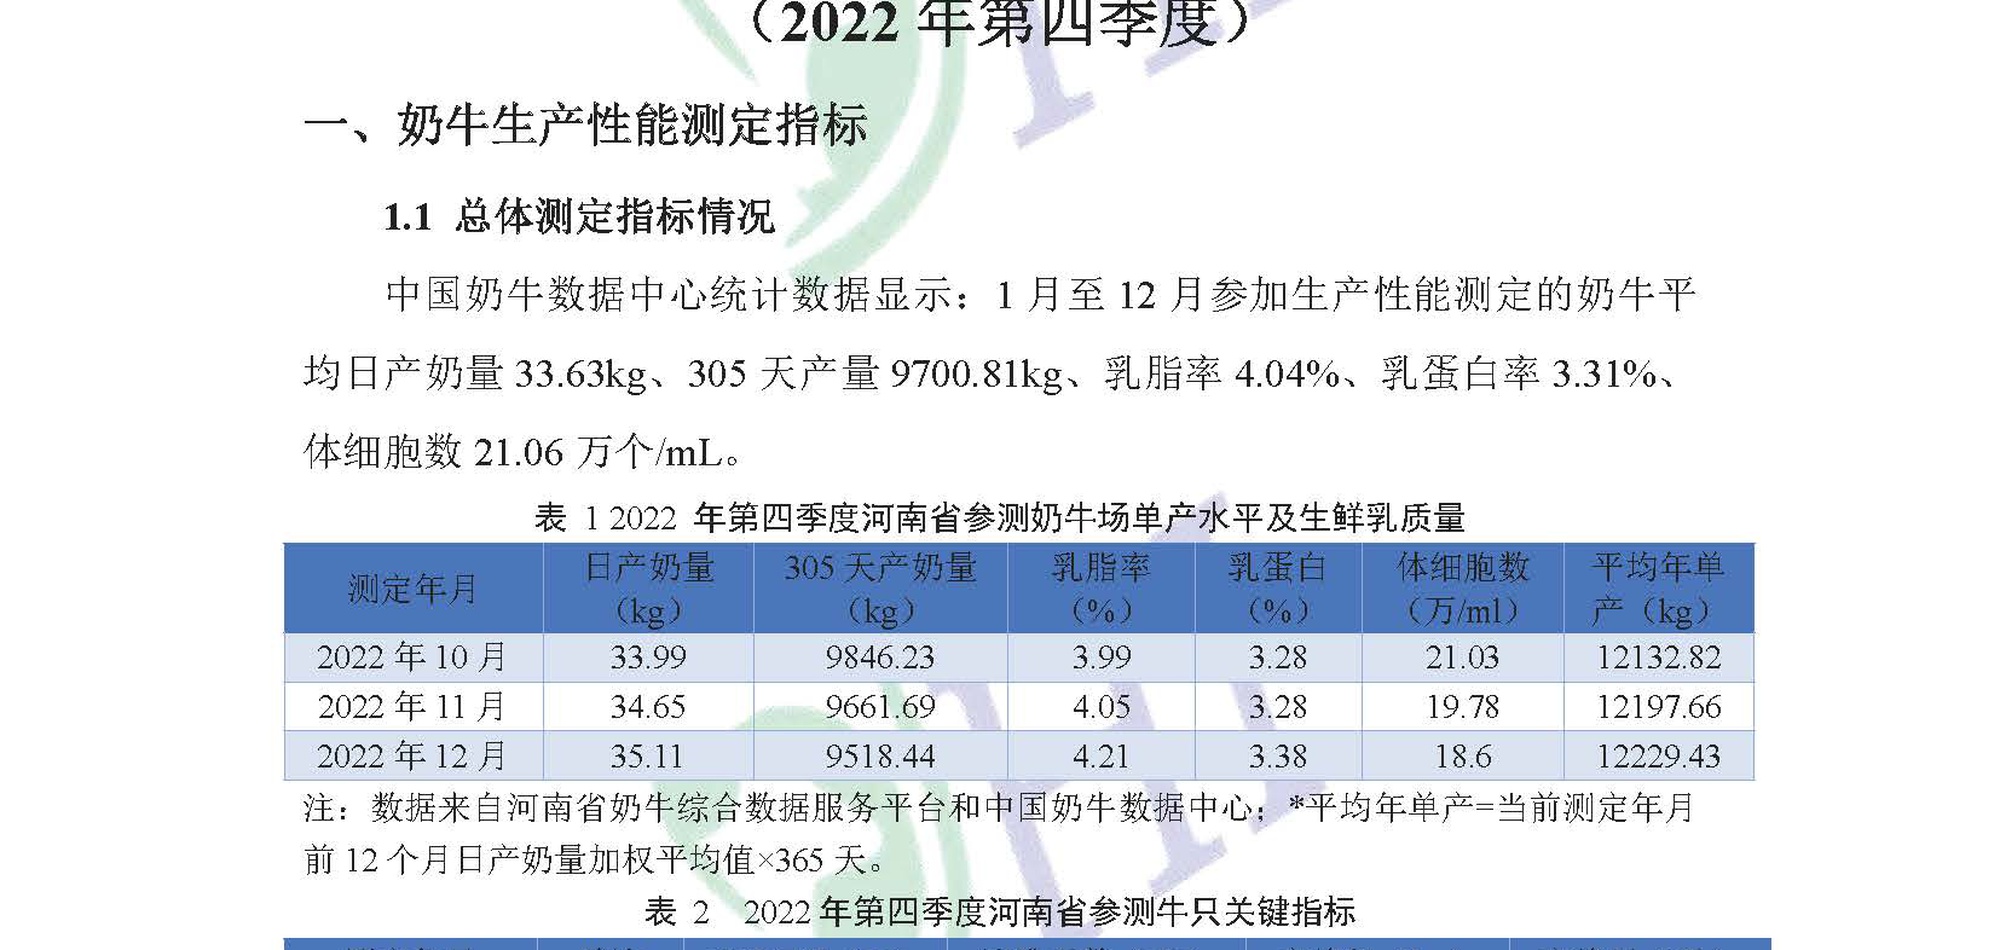 河南省奶业形势及DHI测定情况分析（2022年第4季度报告） 1.14